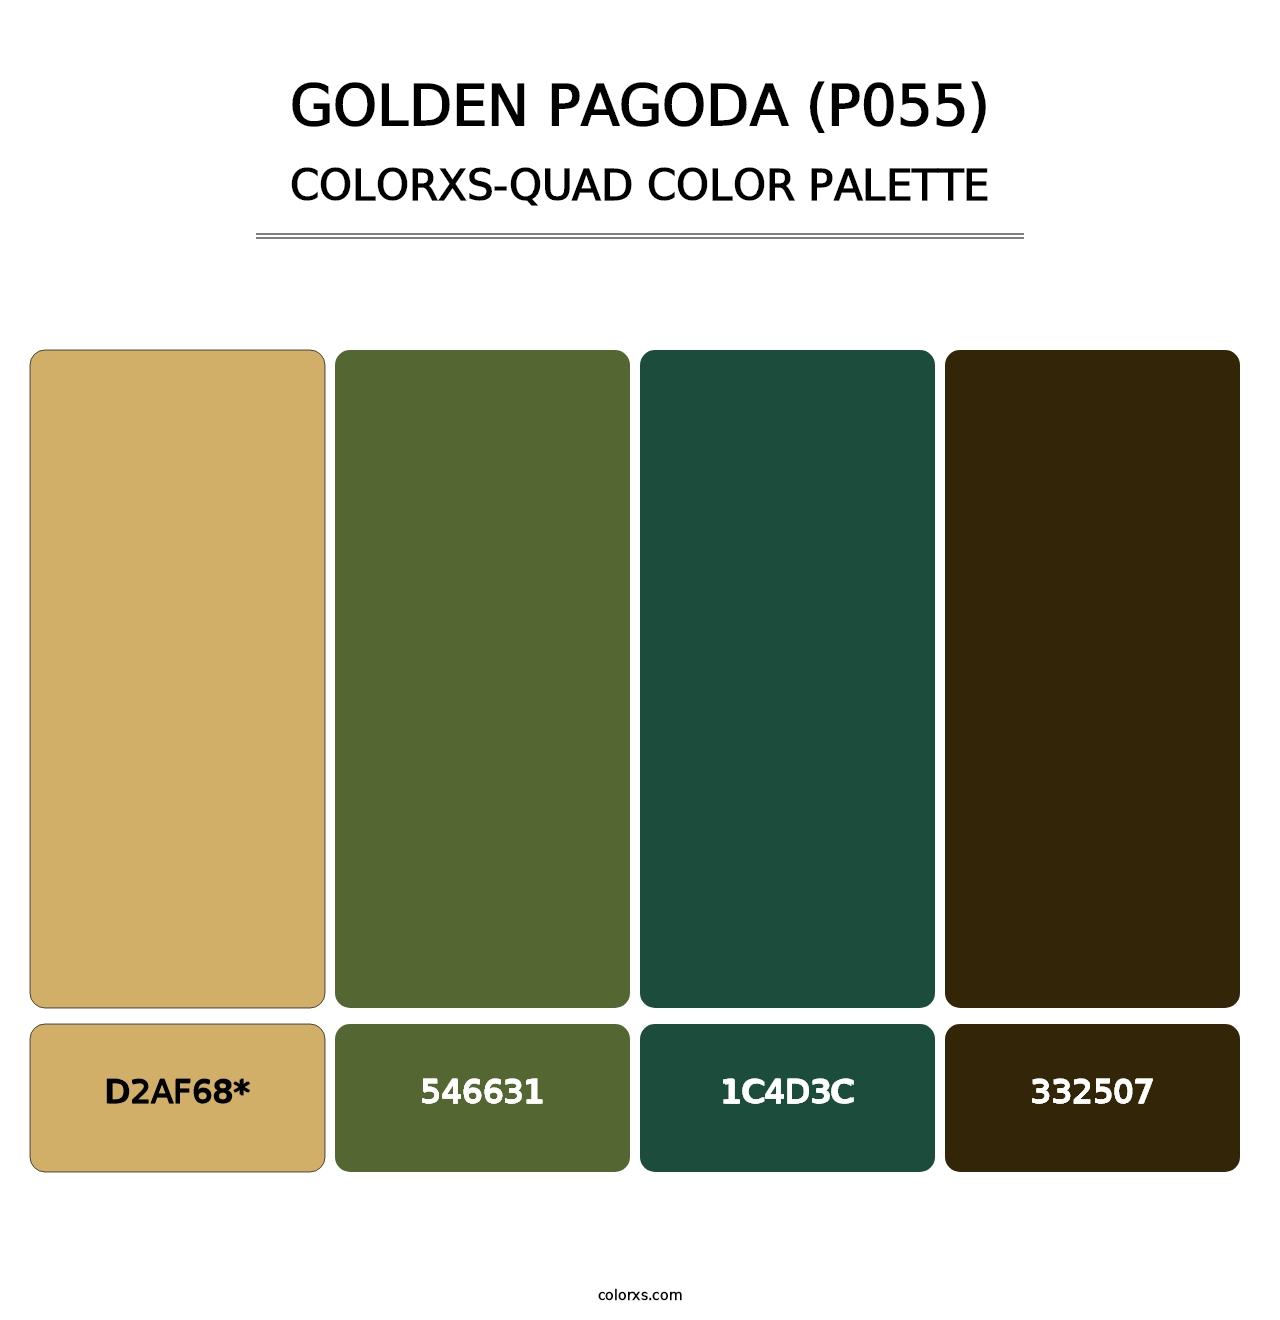 Golden Pagoda (P055) - Colorxs Quad Palette